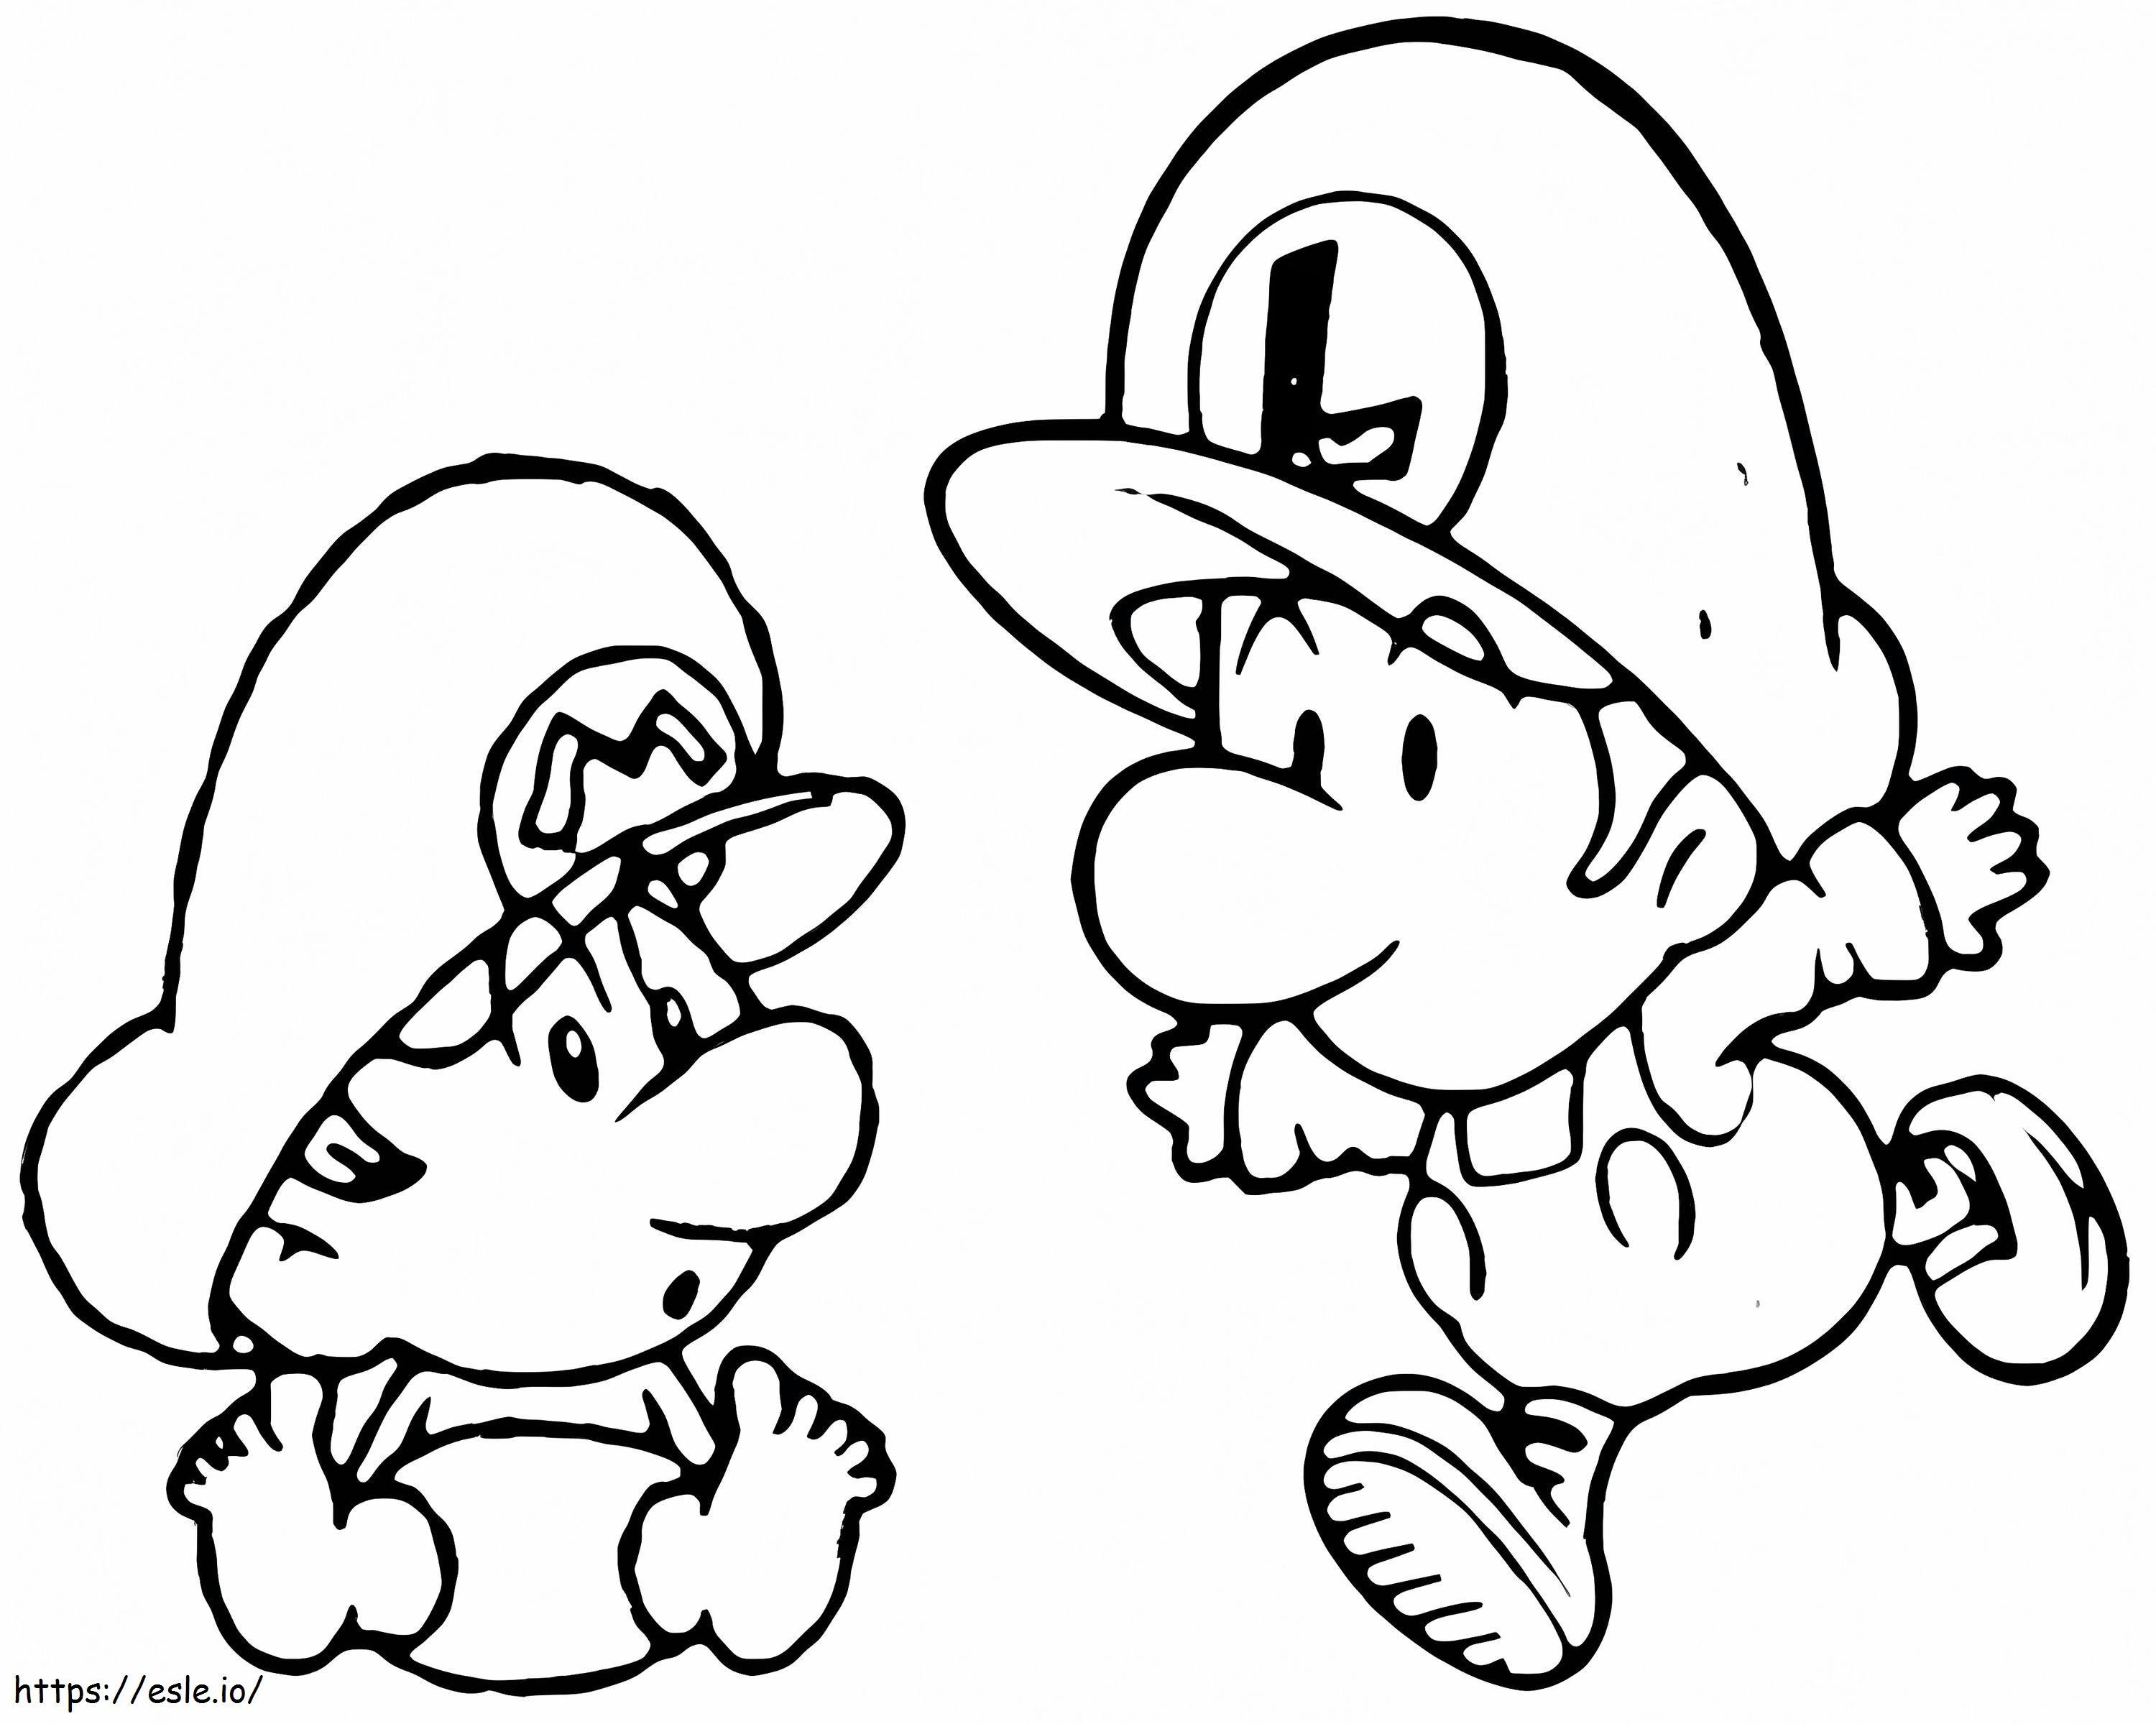 Baby Luigi és Baby Mario kifestő